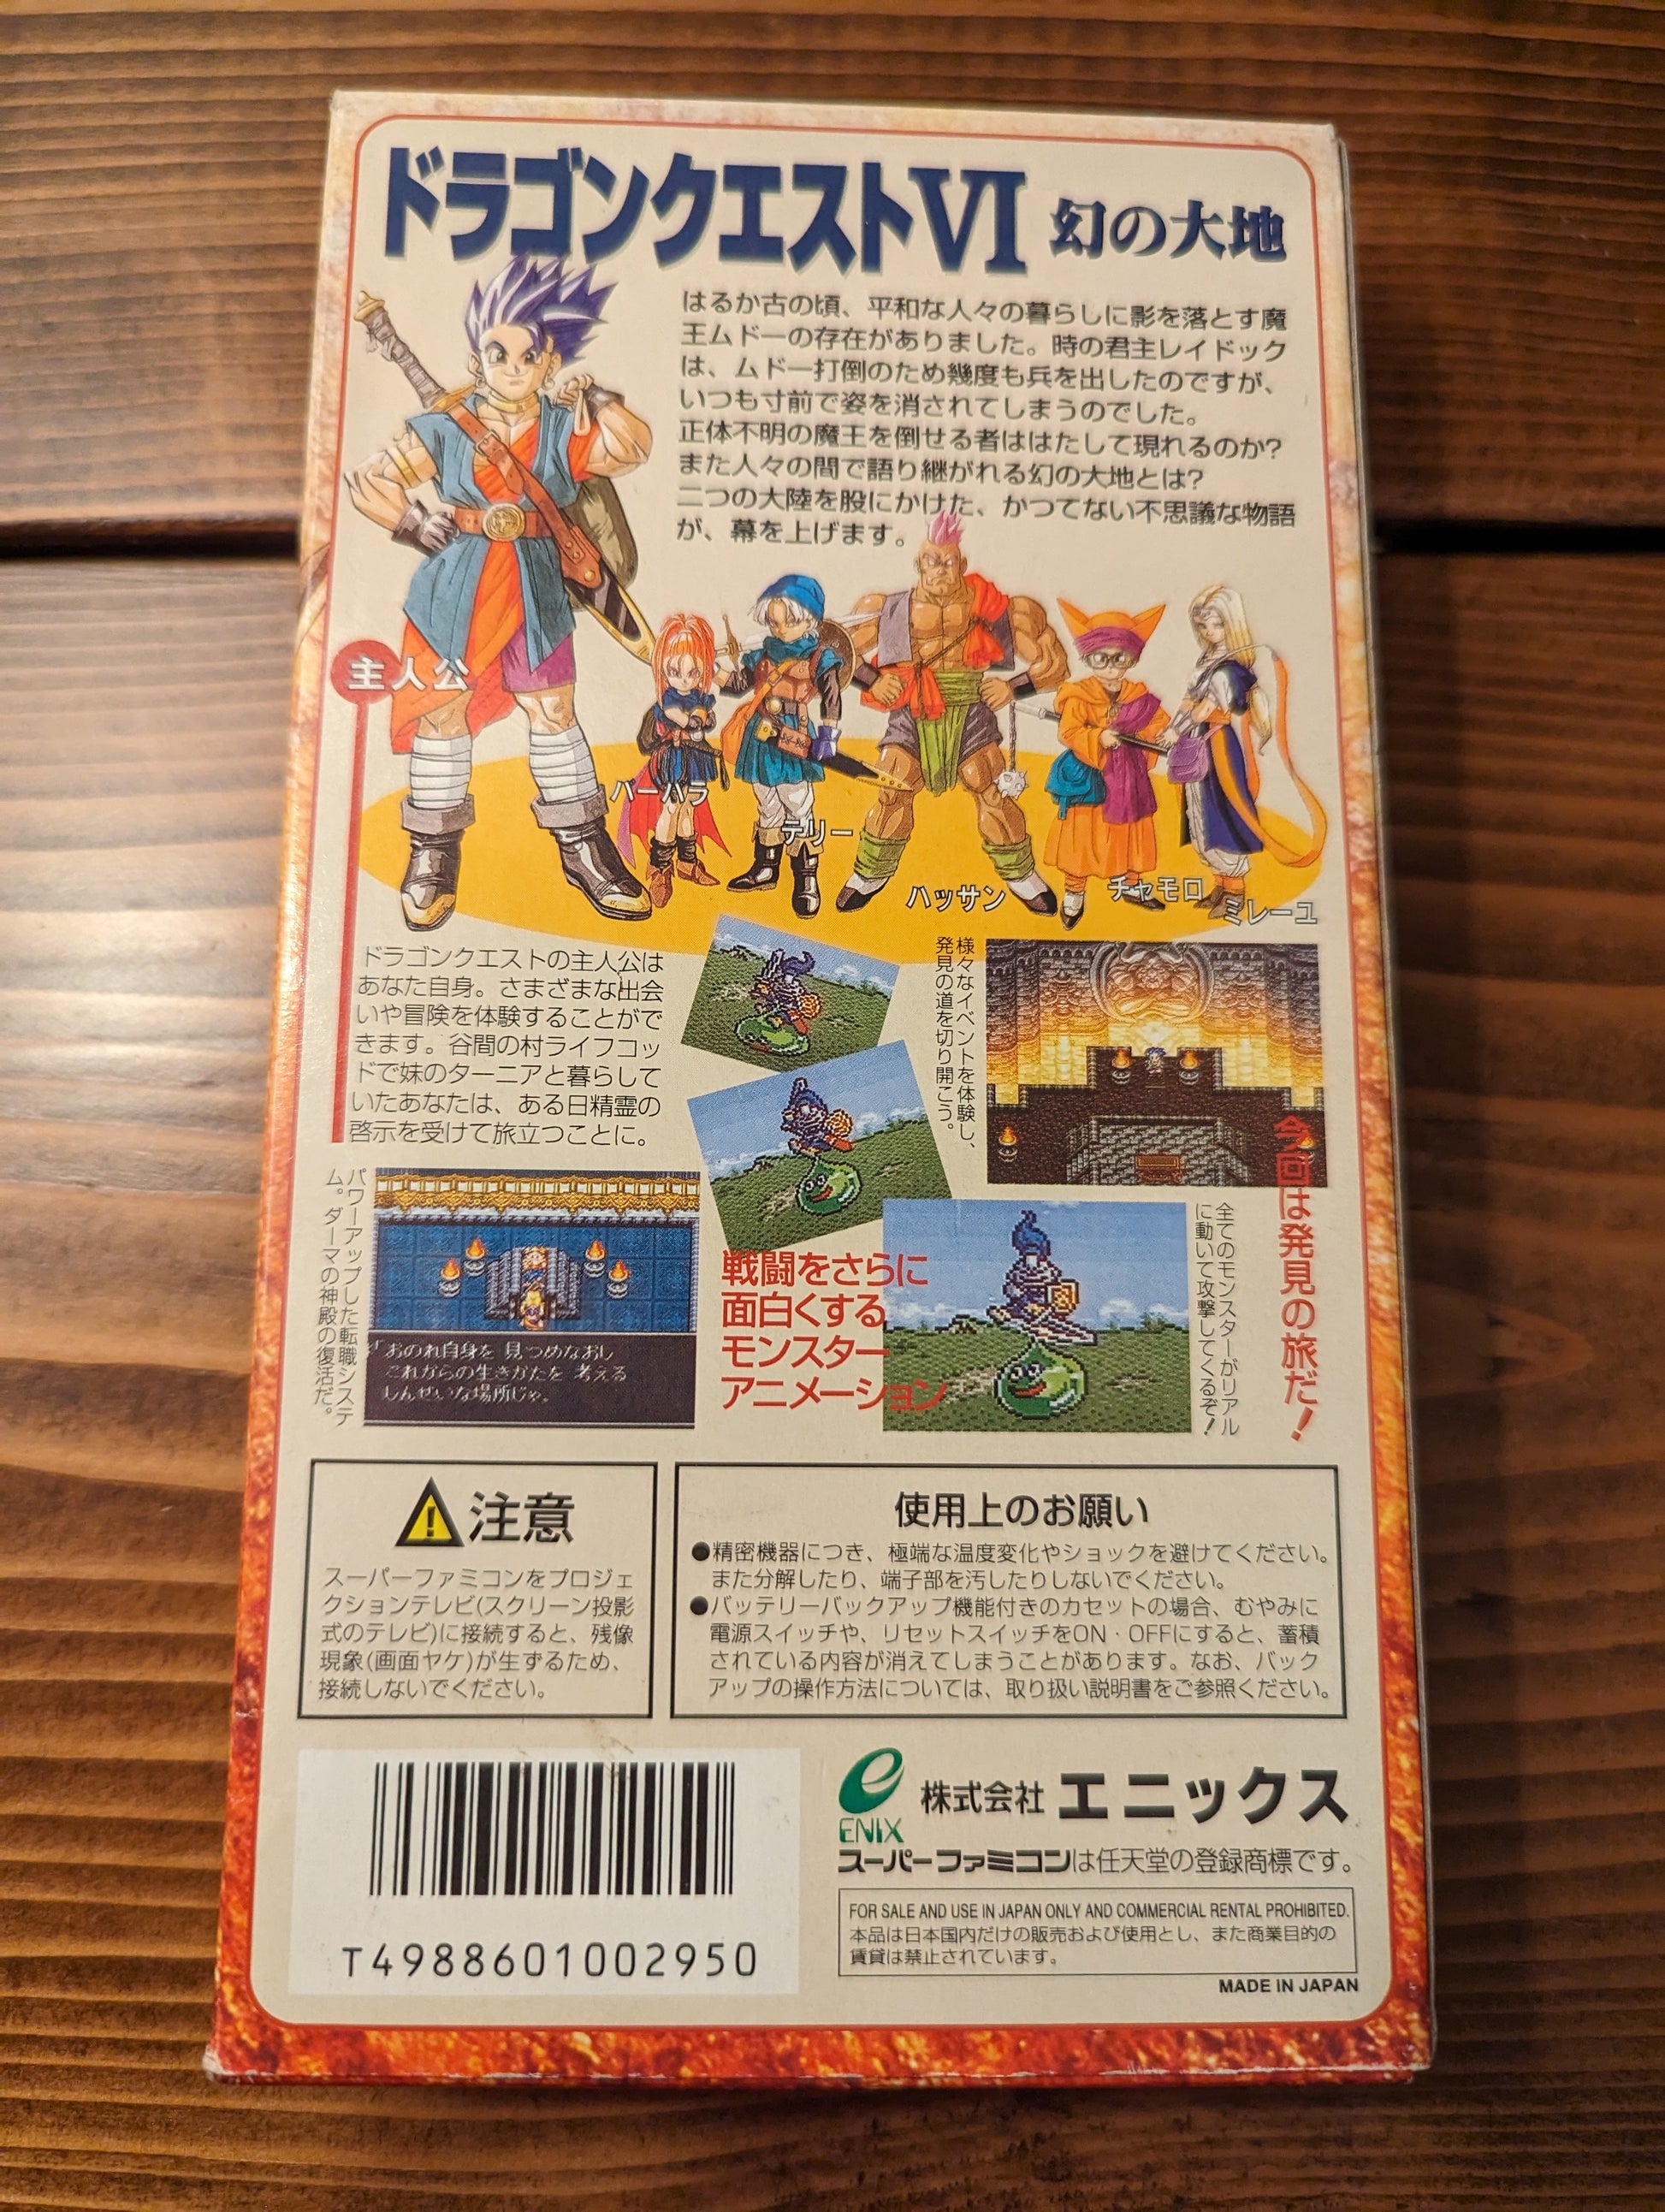 Lot 33 Super Famicom N64 game FF11 Dragon Quest 6 Retro Games ec298